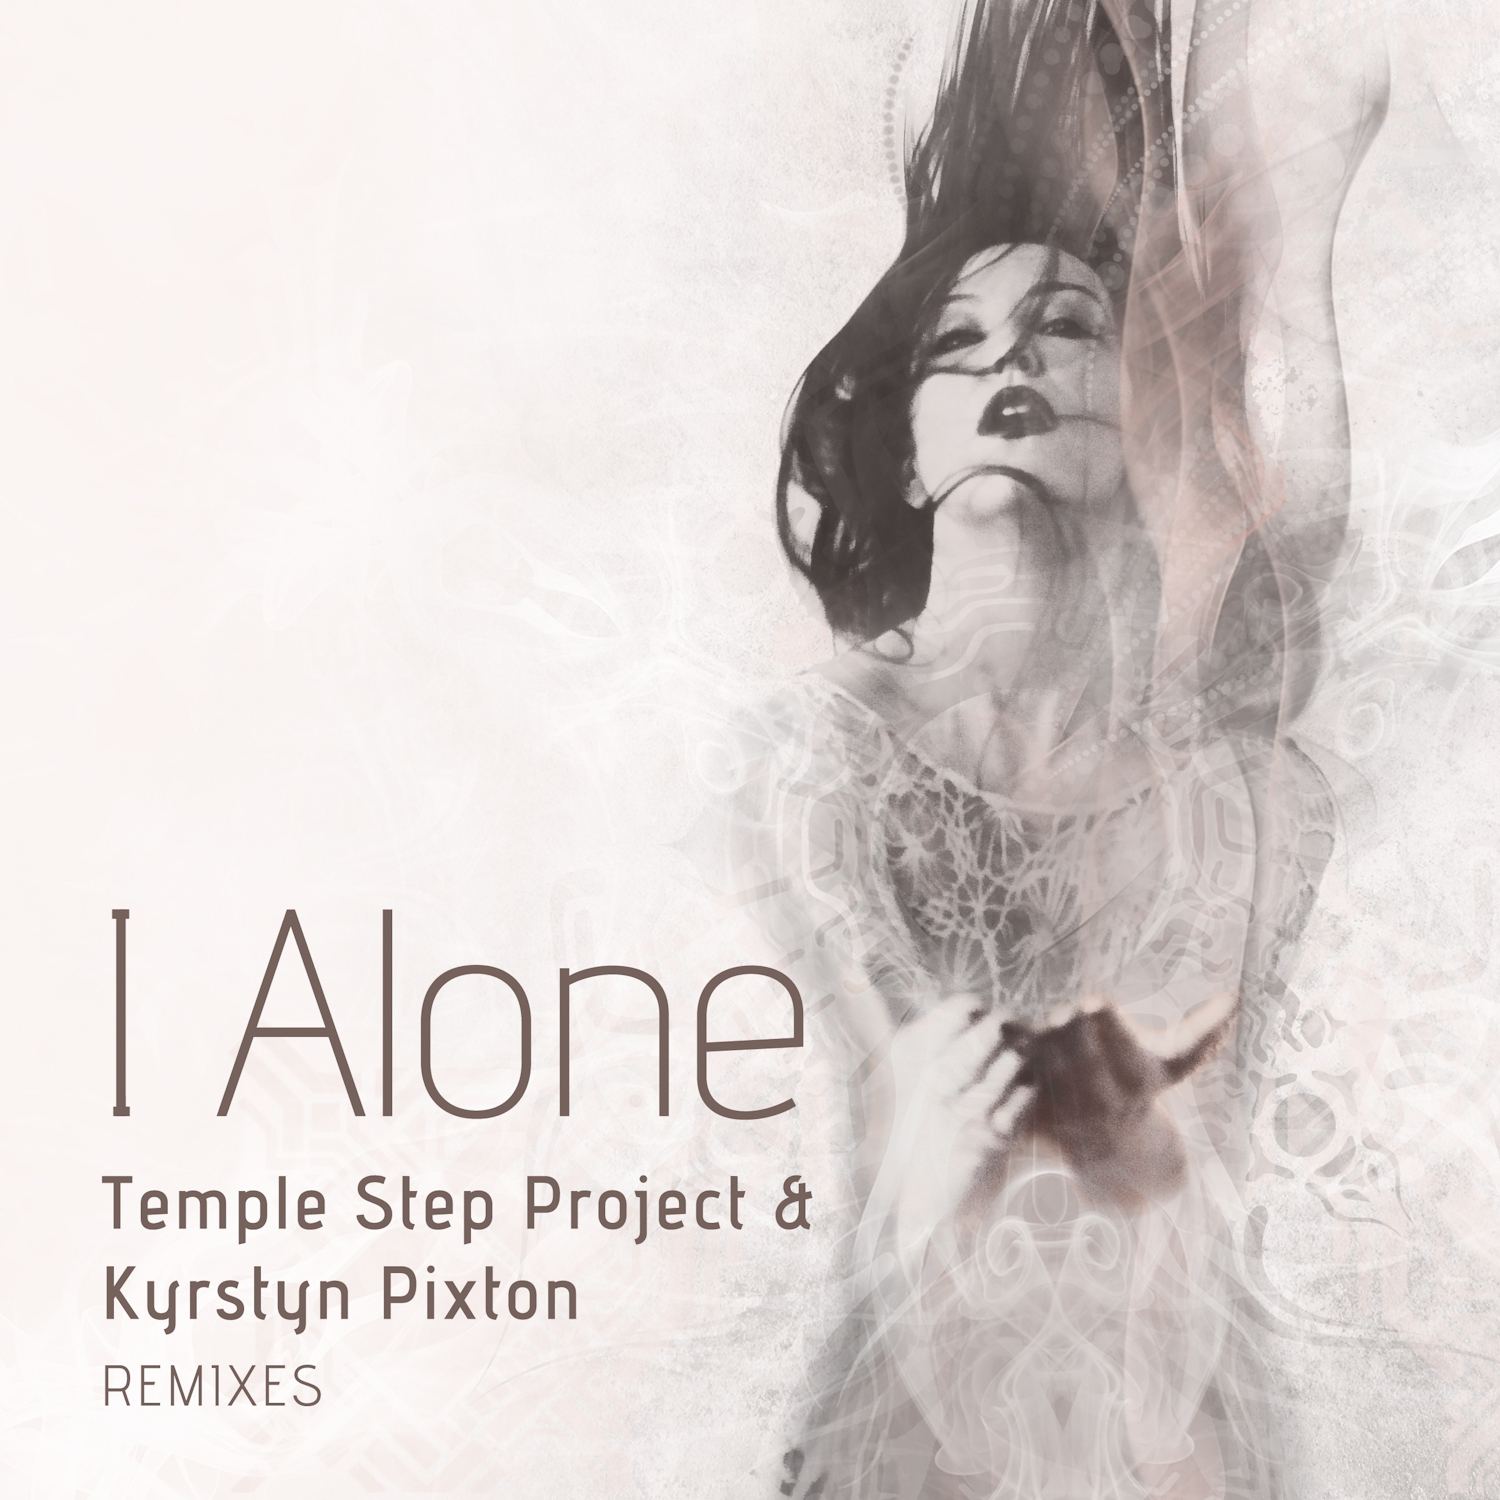 Temple remix. One Alone. I Alone. Песня i'm Alone ремикс.